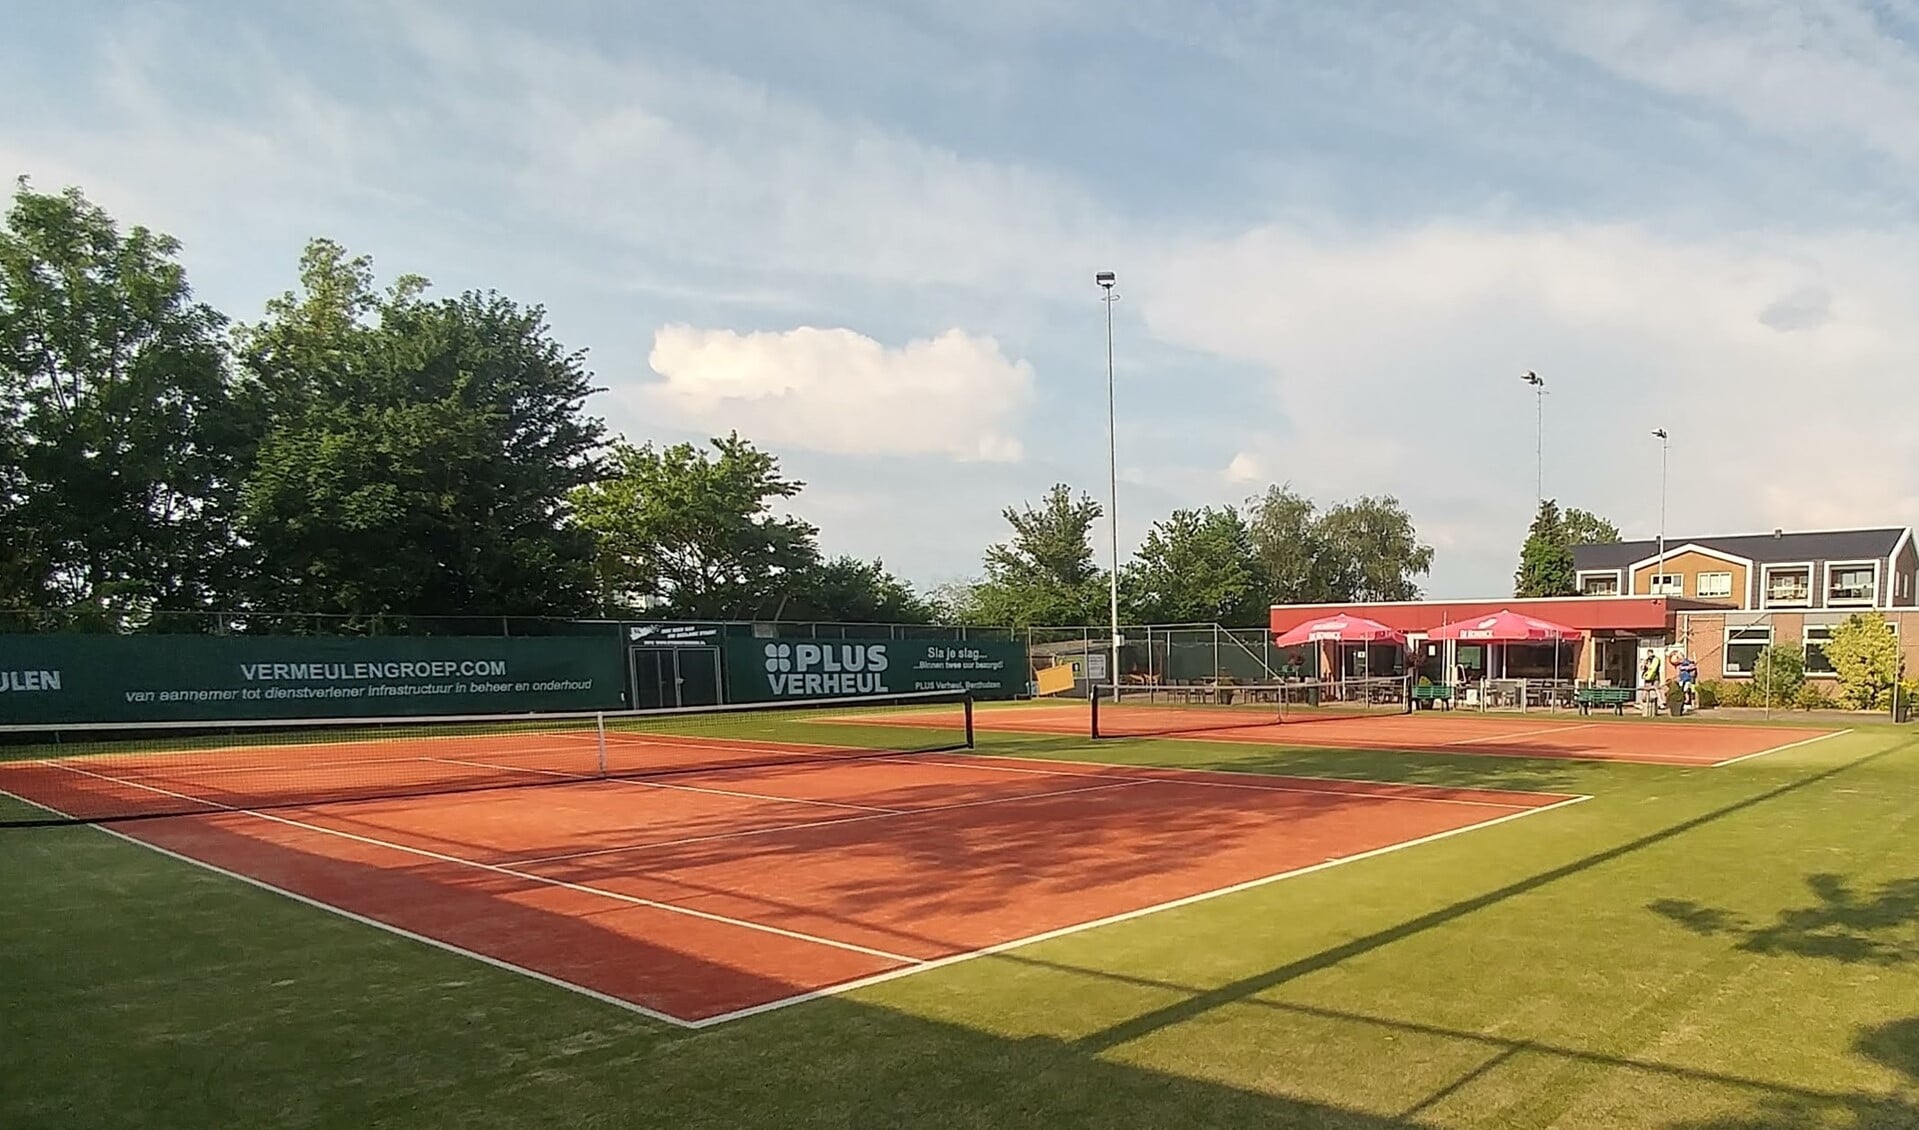 Volgende week is er een open toernooi in Benthuizen.